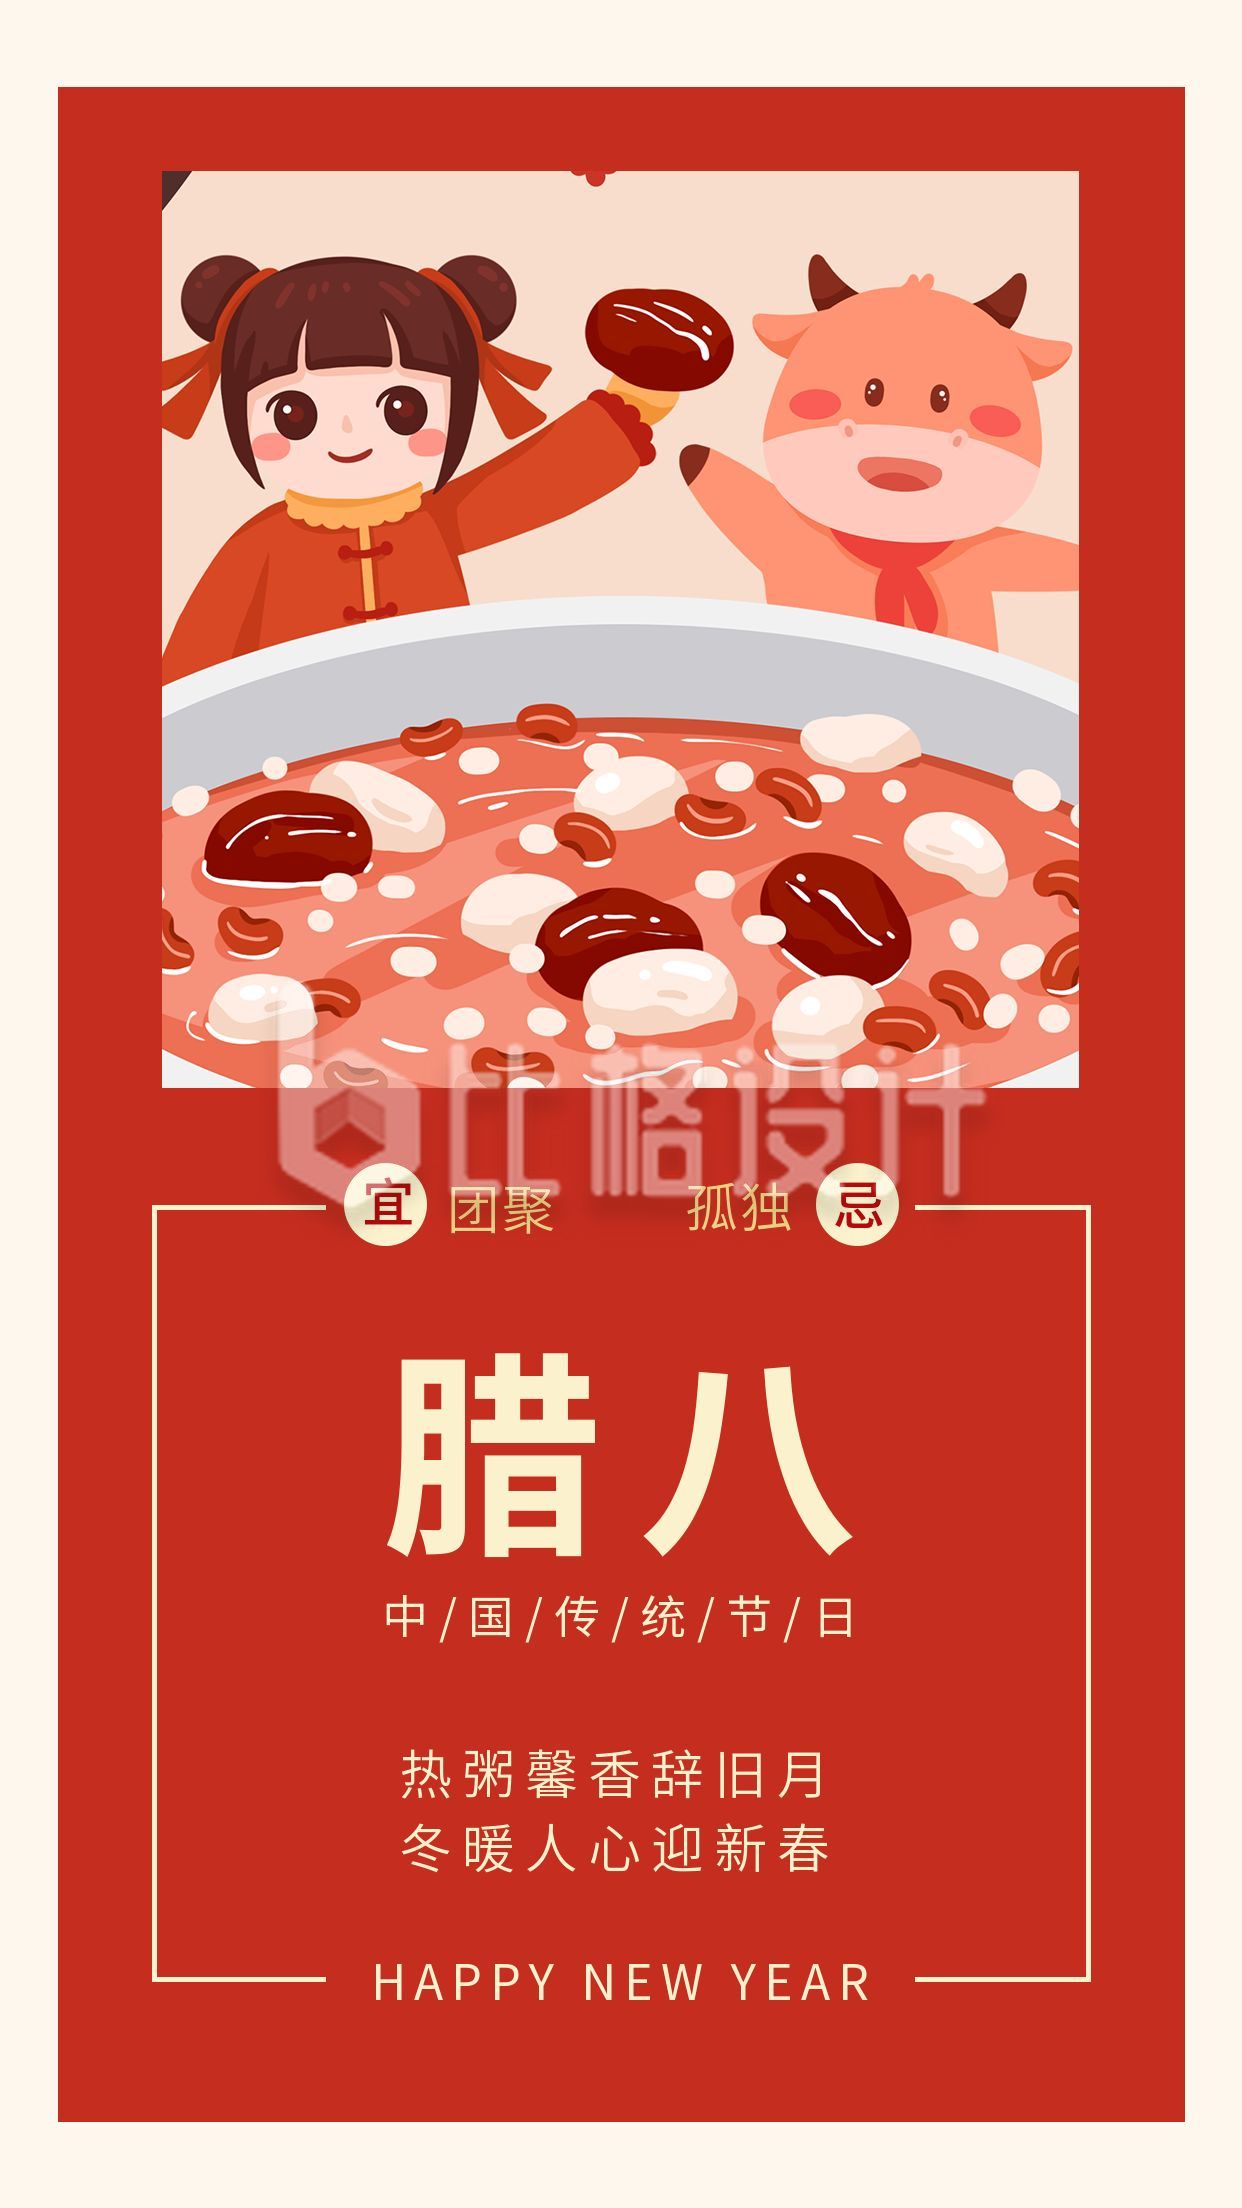 中国传统节日腊八竖版配图